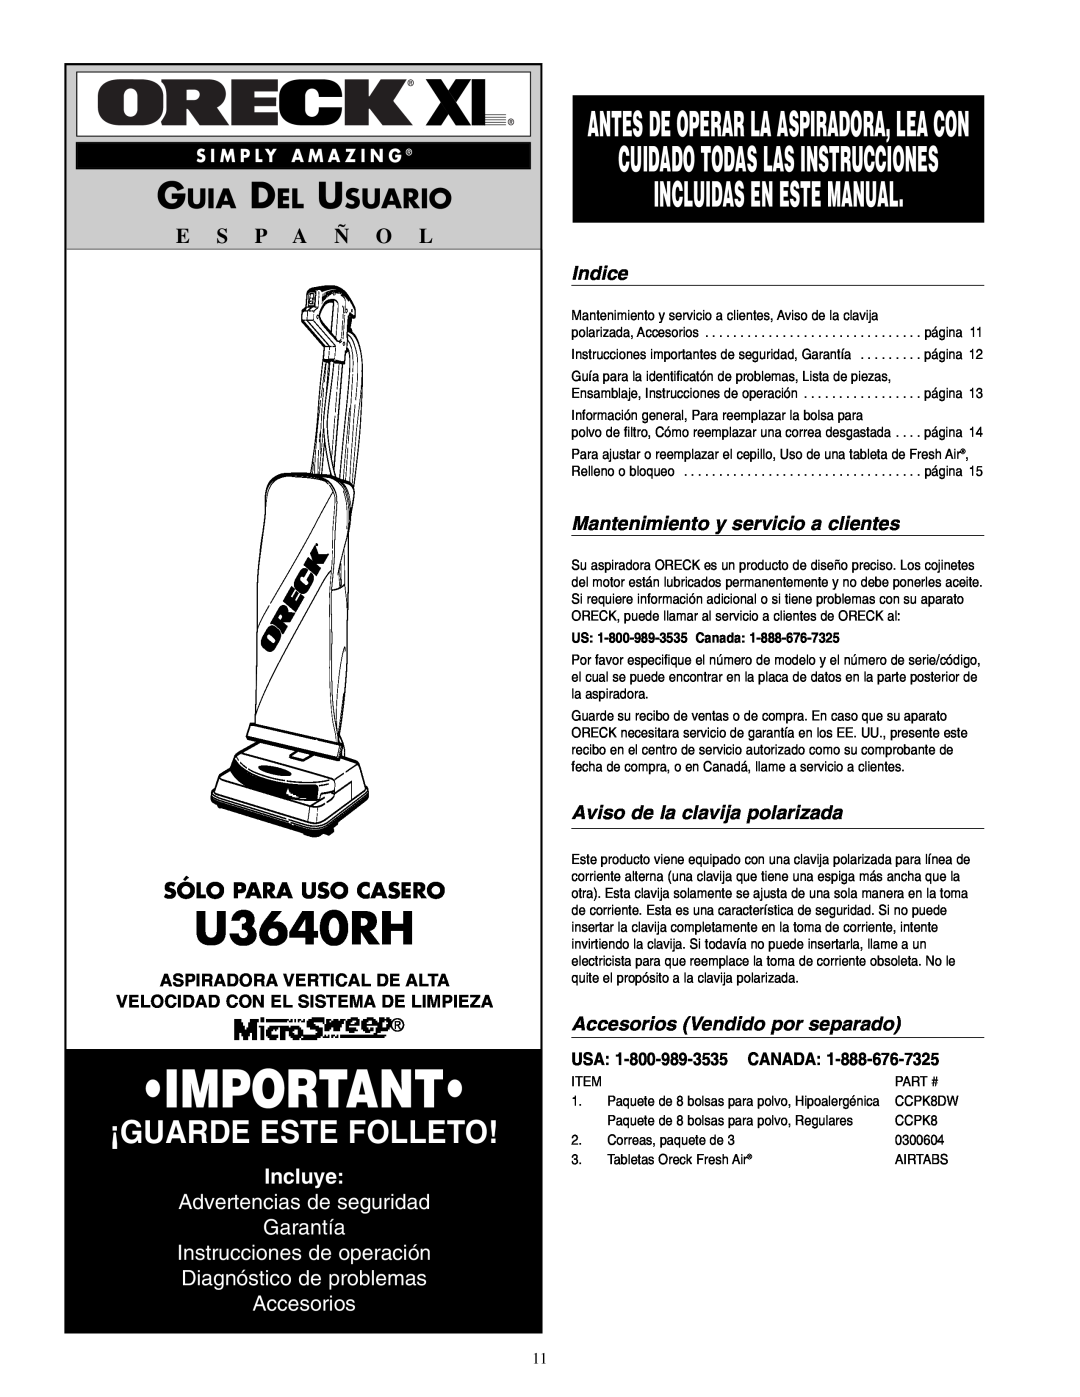 Oreck U3640RH Incluidas En Este Manual, Guia Del Usuario, Sólo Para Uso Casero, Incluye, Instrucciones de operación 